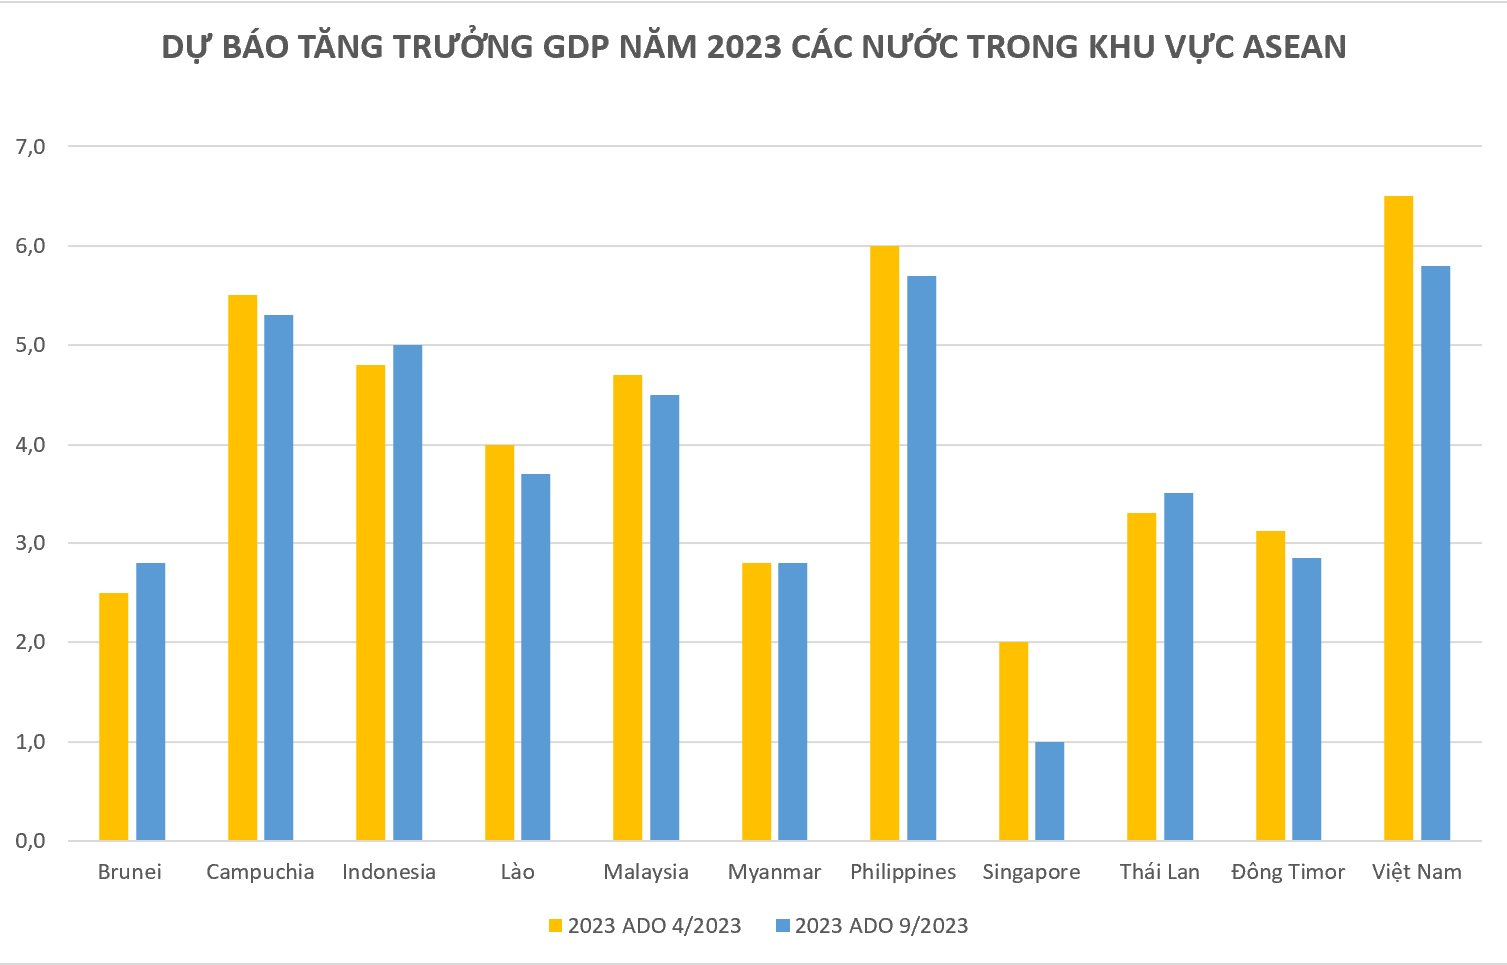 Tăng trưởng kinh tế 2023 của Việt Nam được dự báo cao hay thấp so với Thái Lan, Singapore và các nước láng giềng? - Ảnh 2.